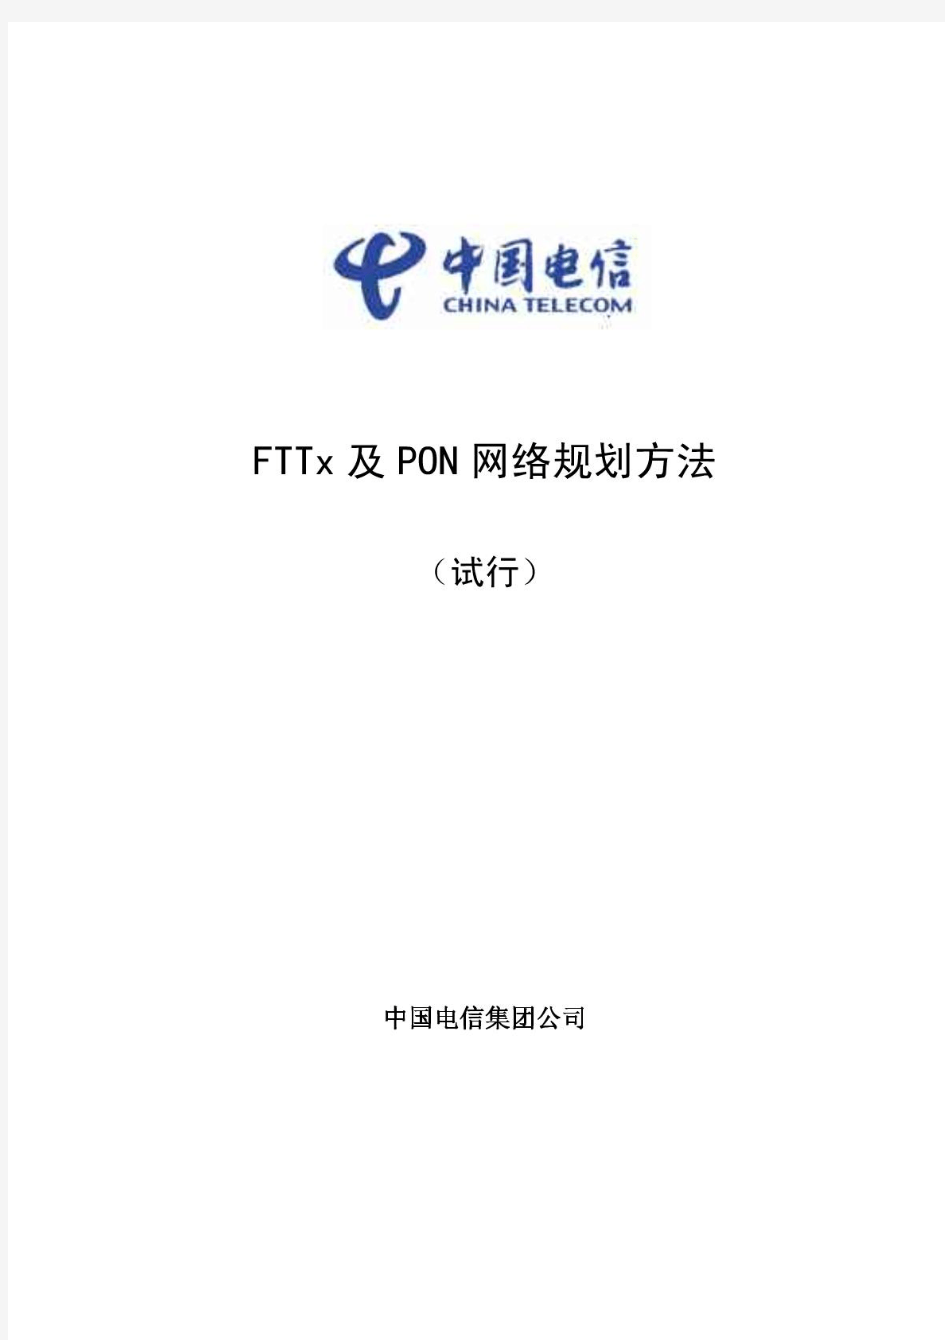 中国电信-FTTx及PON网络规划方法